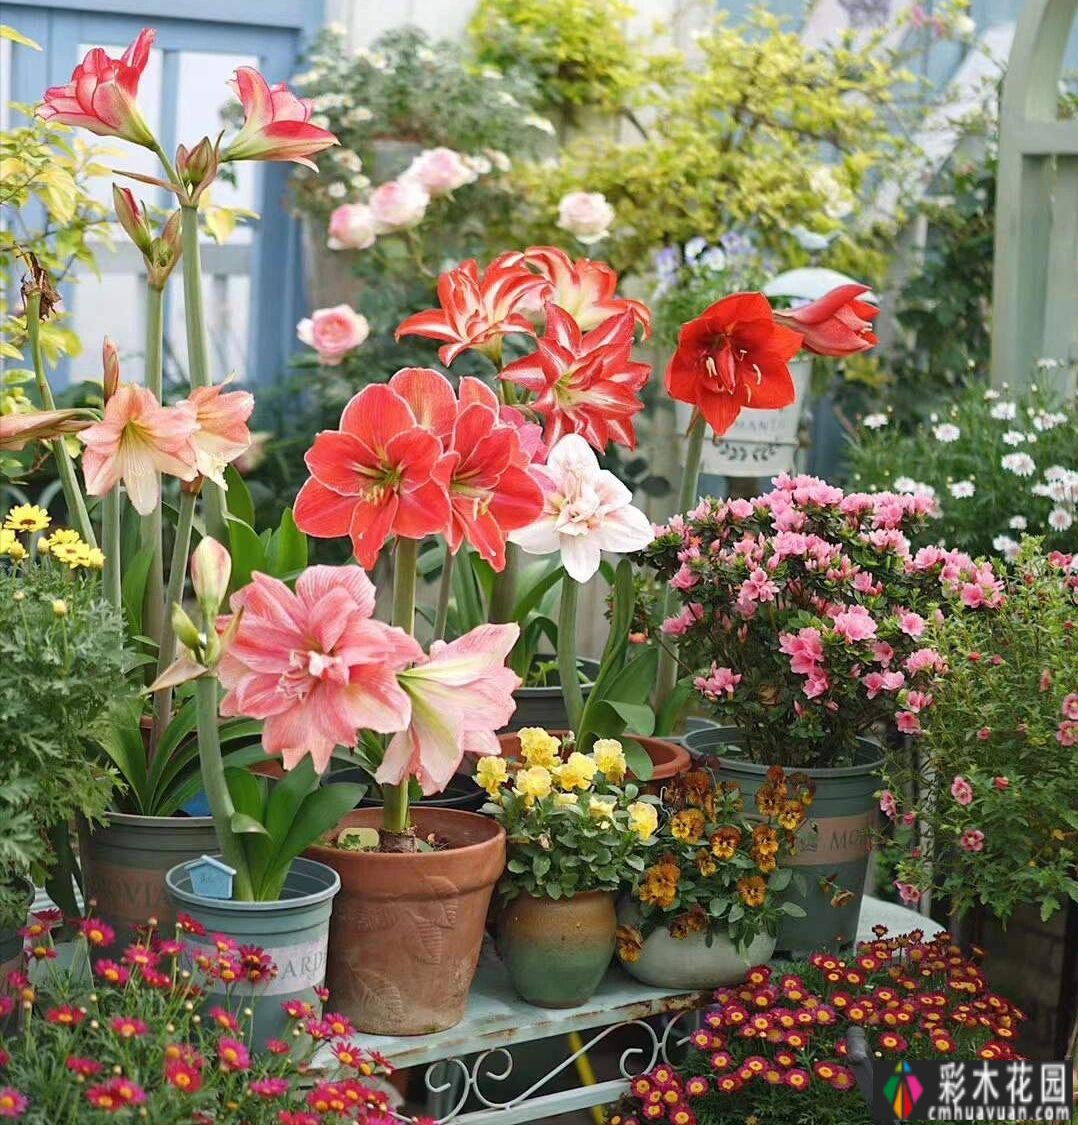 20㎡迷你院子，两年种了100多盆花，小小的空间也能创造出超级美花园